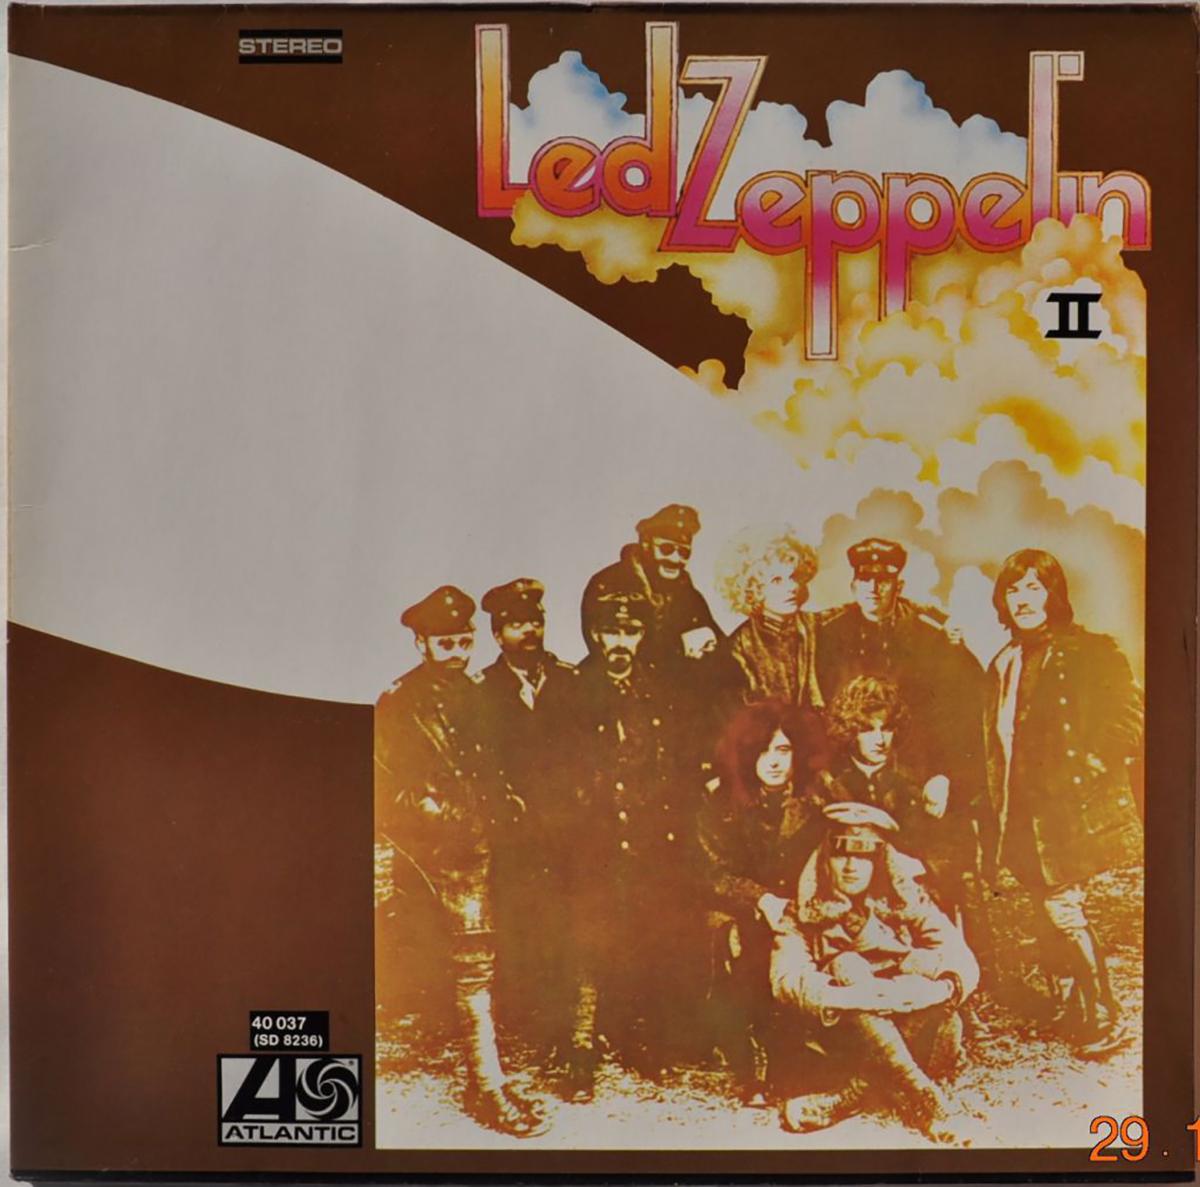 Обложка второго студийного альбома Led Zeppelin II